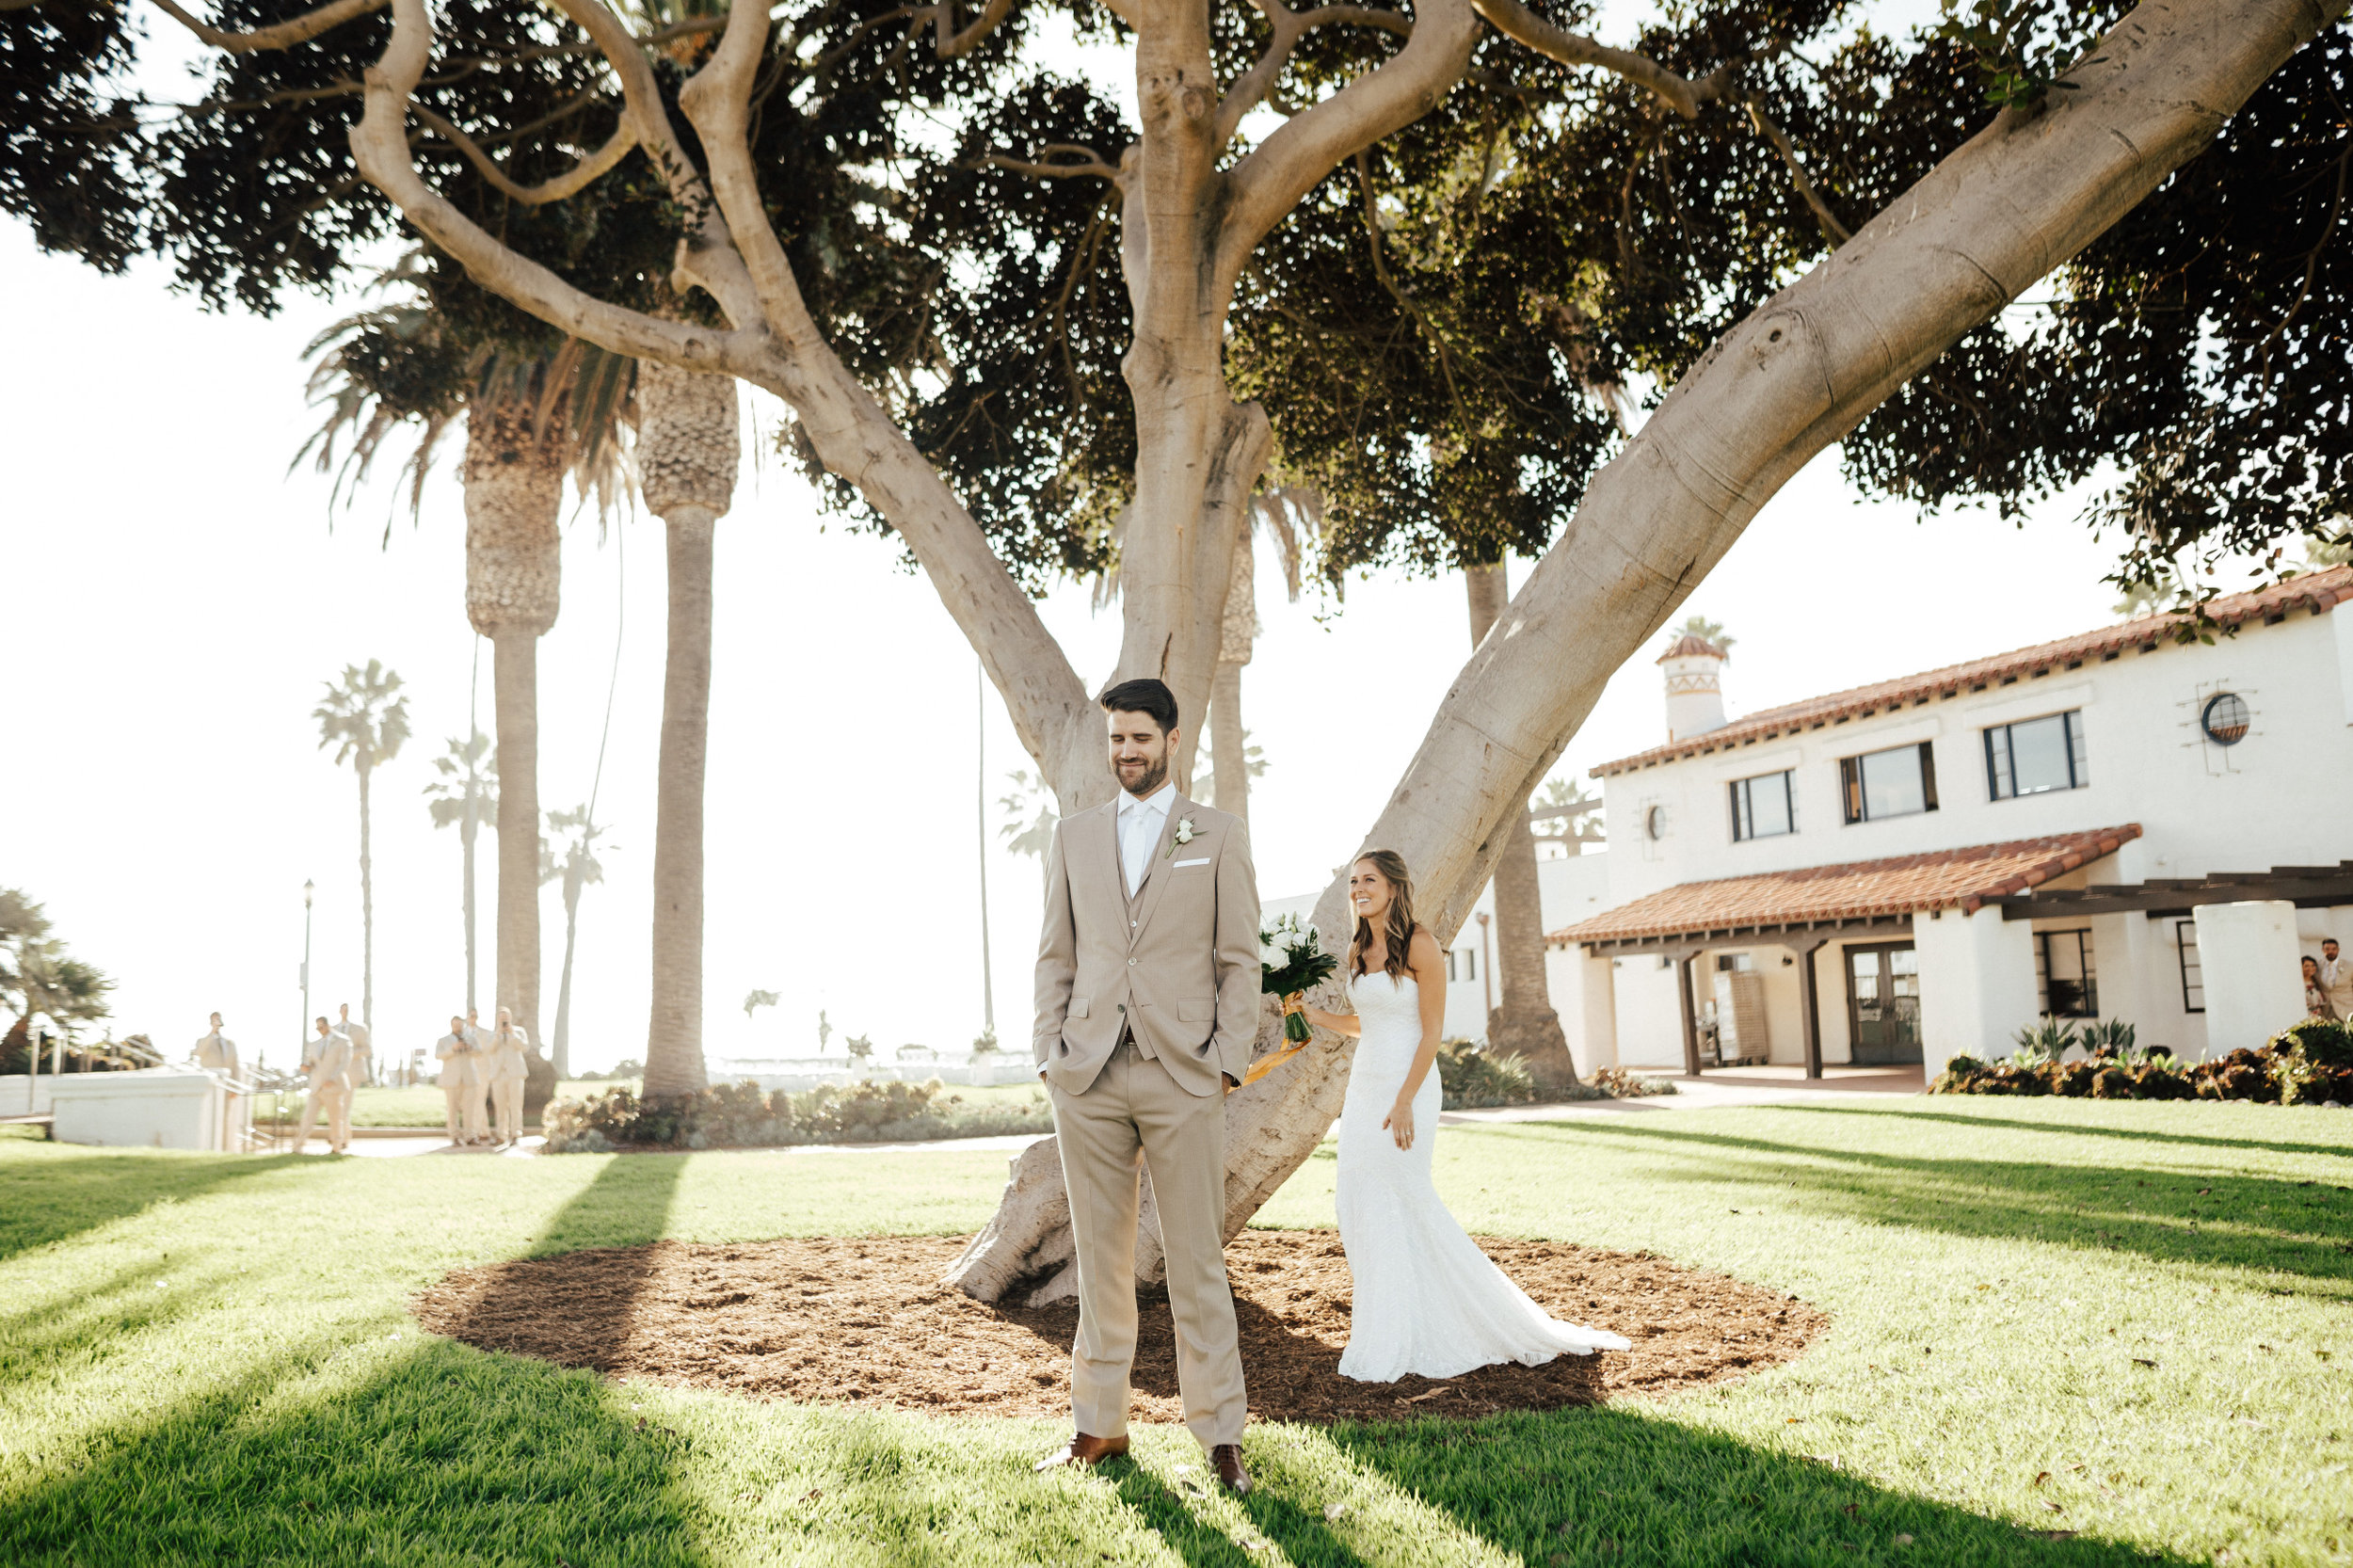 Ole Hanson Beach Club Wedding - Orange County Wedding Venue - The Overwhelmed Bride Wedding Blog